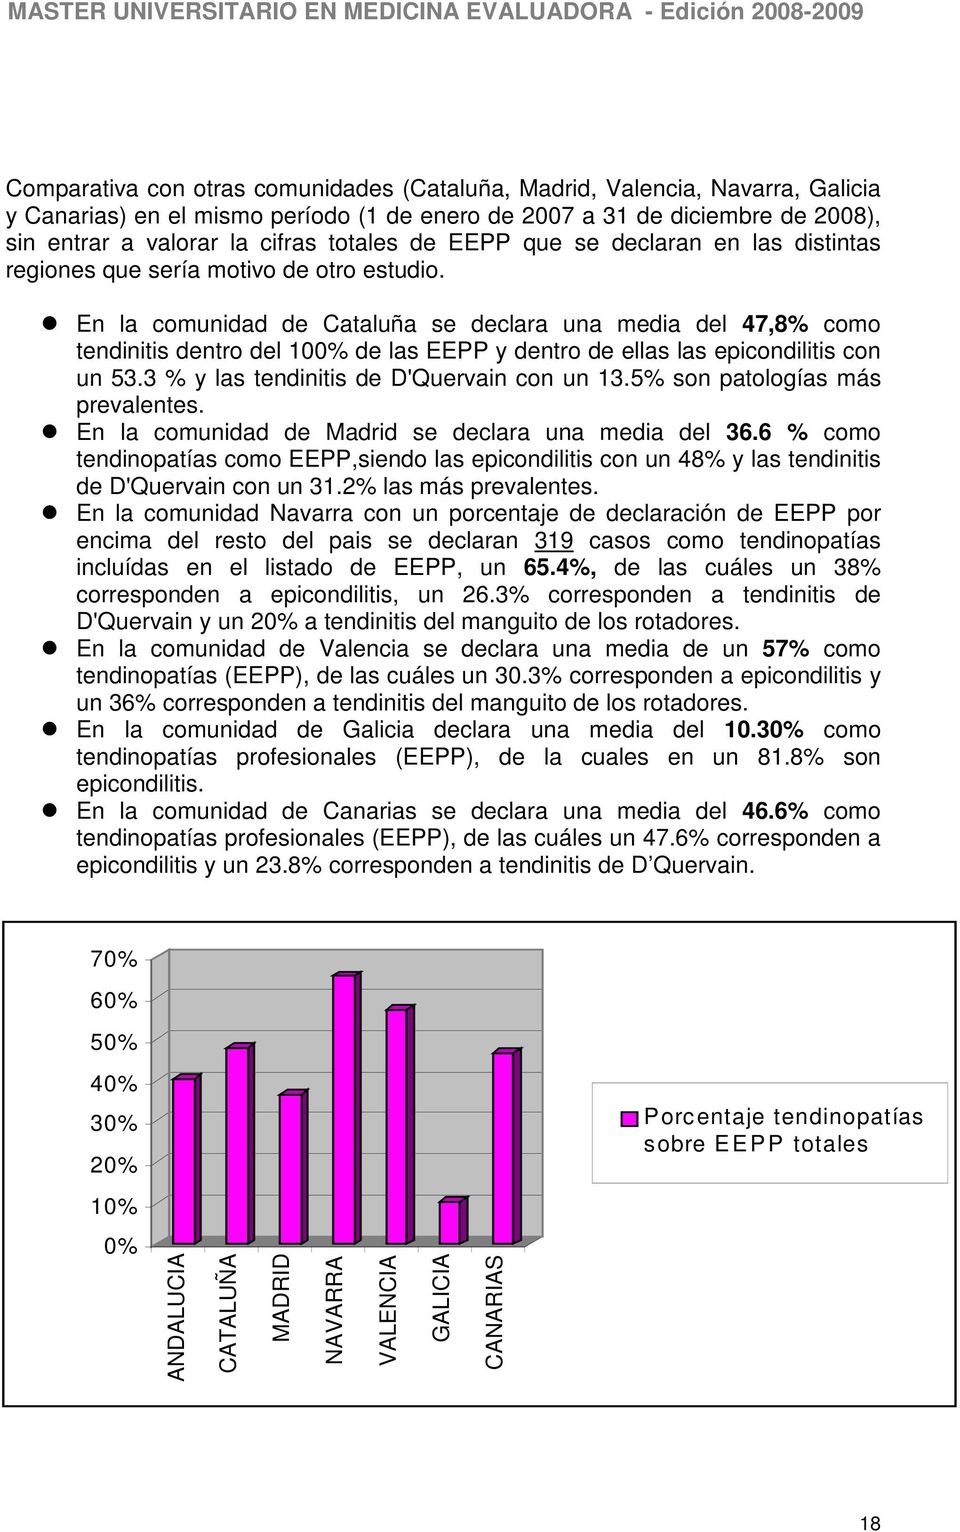 En la comunidad de Cataluña se declara una media del 47,8% como tendinitis dentro del 100% de las EEPP y dentro de ellas las epicondilitis con un 53.3 % y las tendinitis de D'Quervain con un 13.